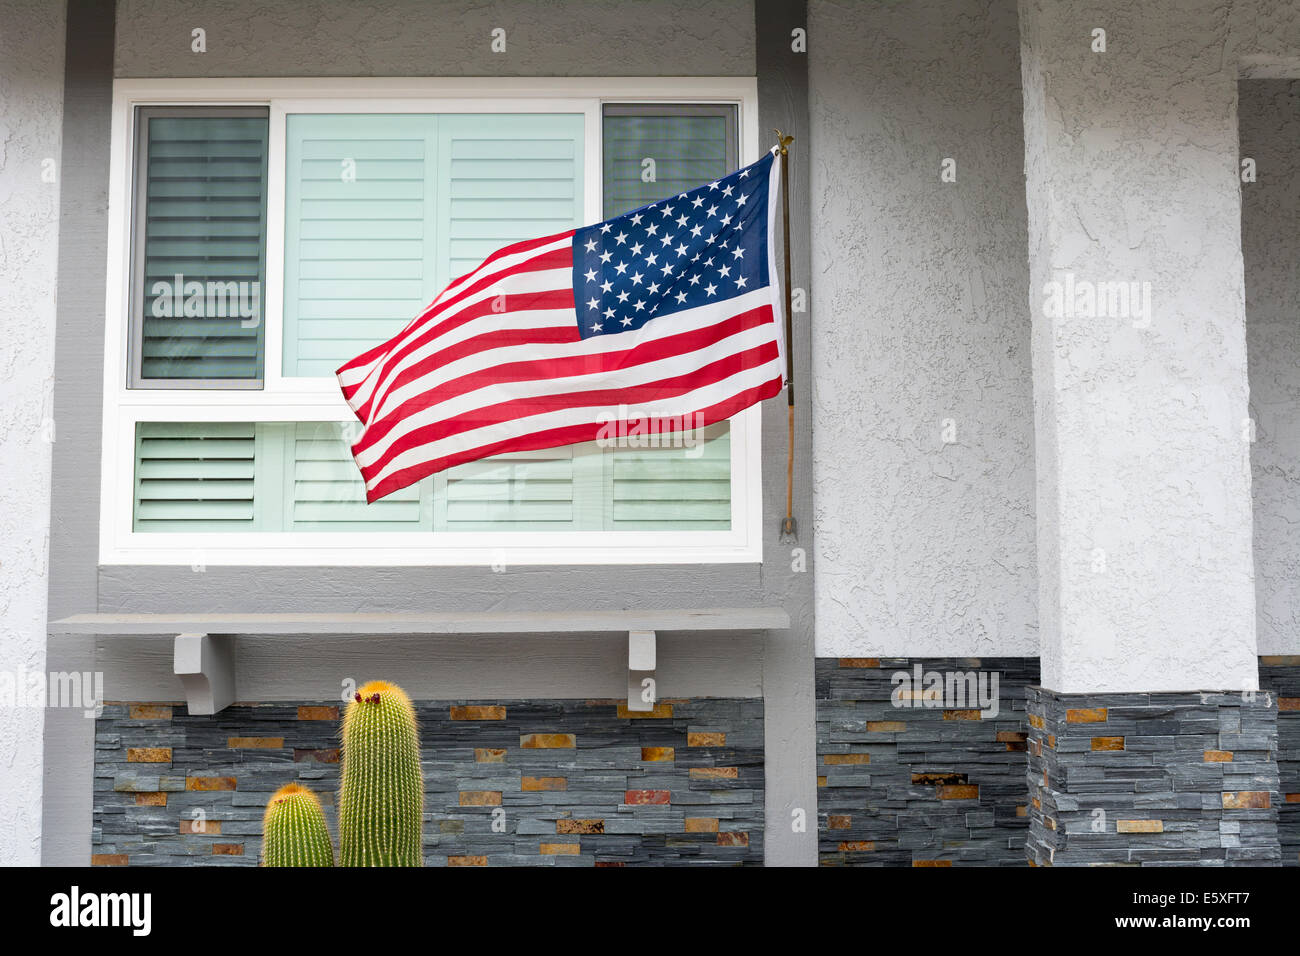 Amerikanische Flagge weht im Wind beim hängen an einem Wohnhaus symbolisiert ein patriotischer Feiertag in den Vereinigten Staaten. Stockfoto